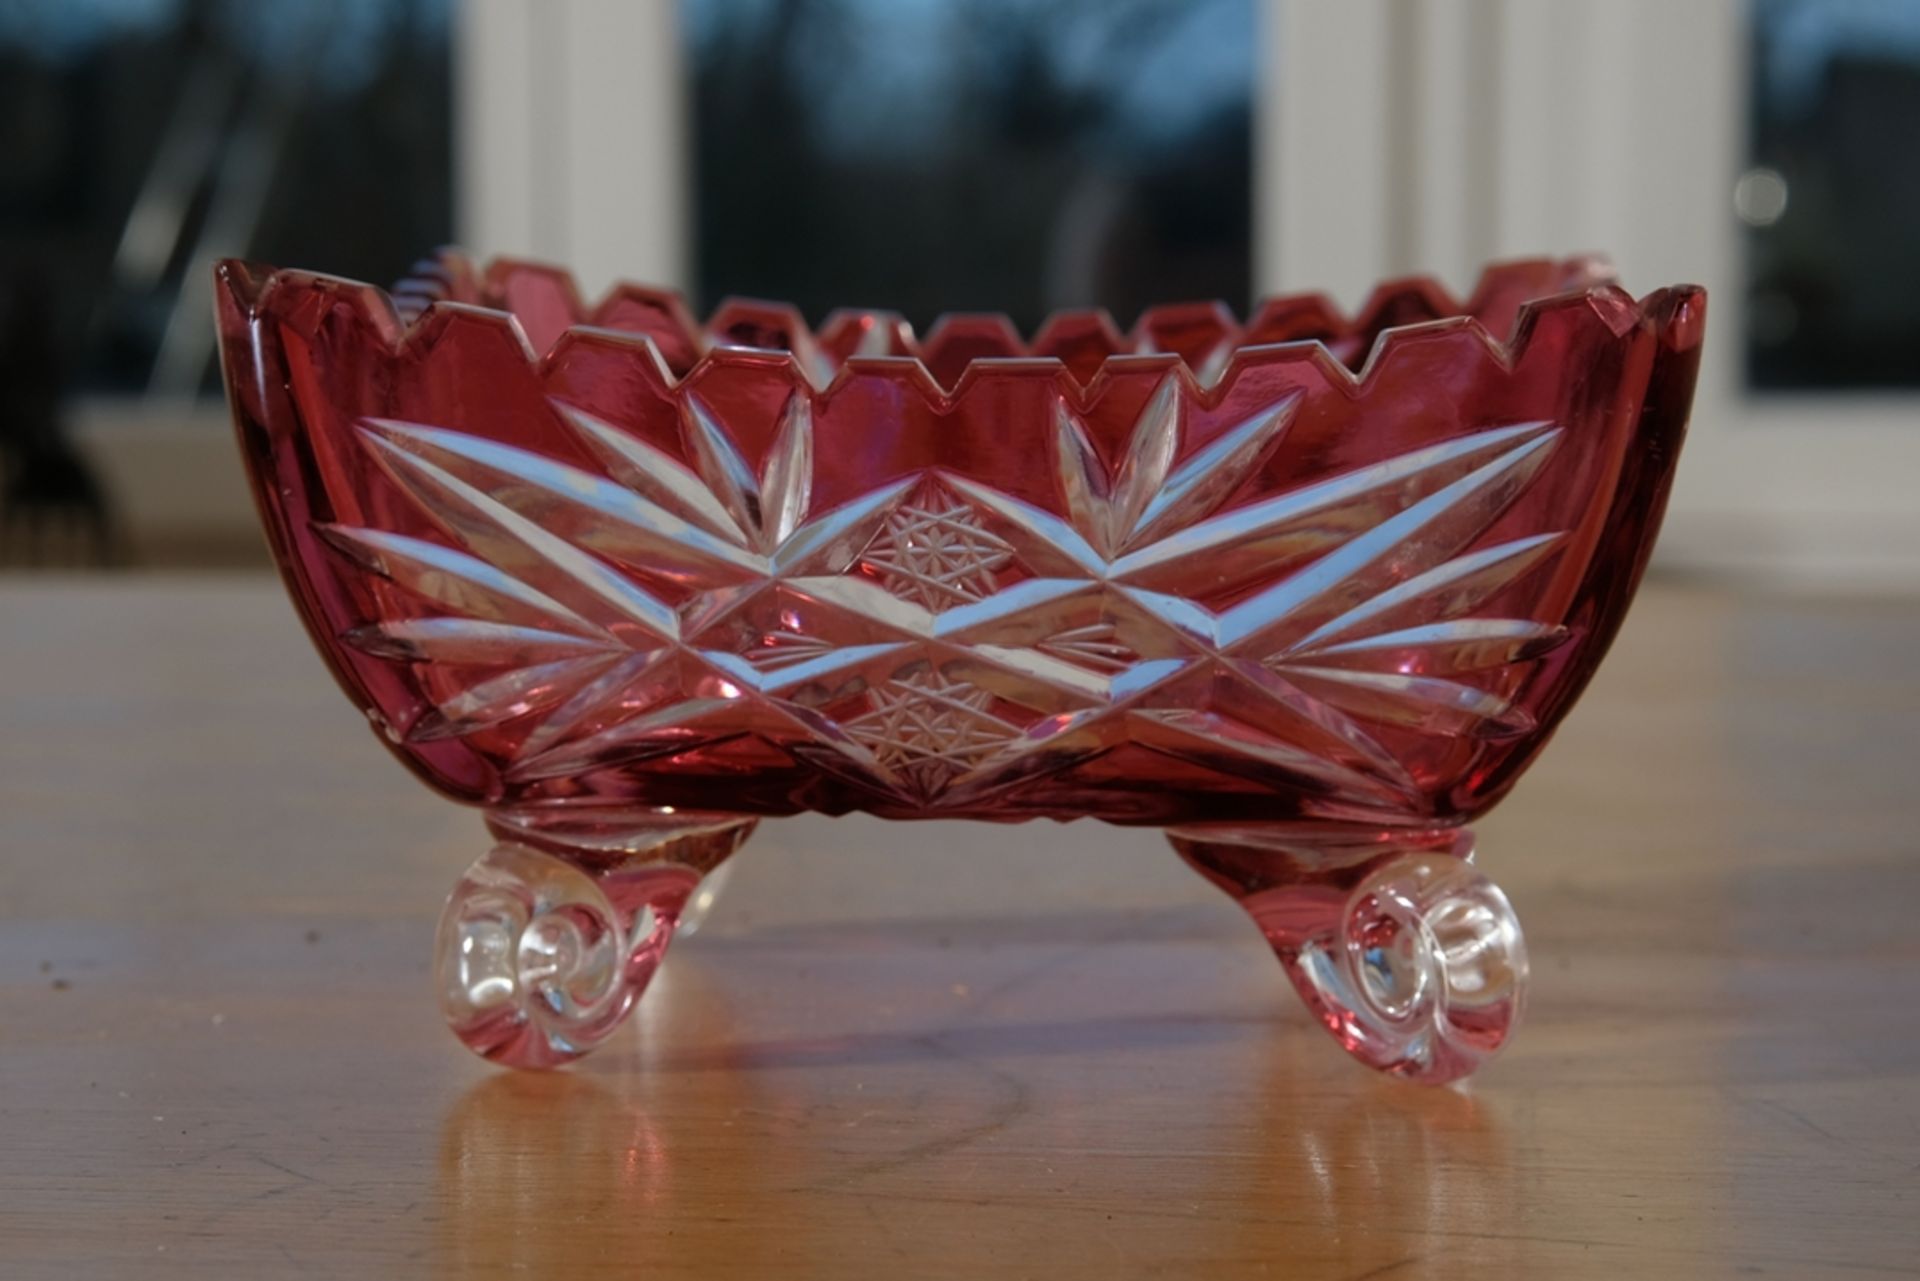 Glasschale, wohl Murano, rotes Glas, mit floralen Ornamenten graviert, 16 x 16 x 9 cm.